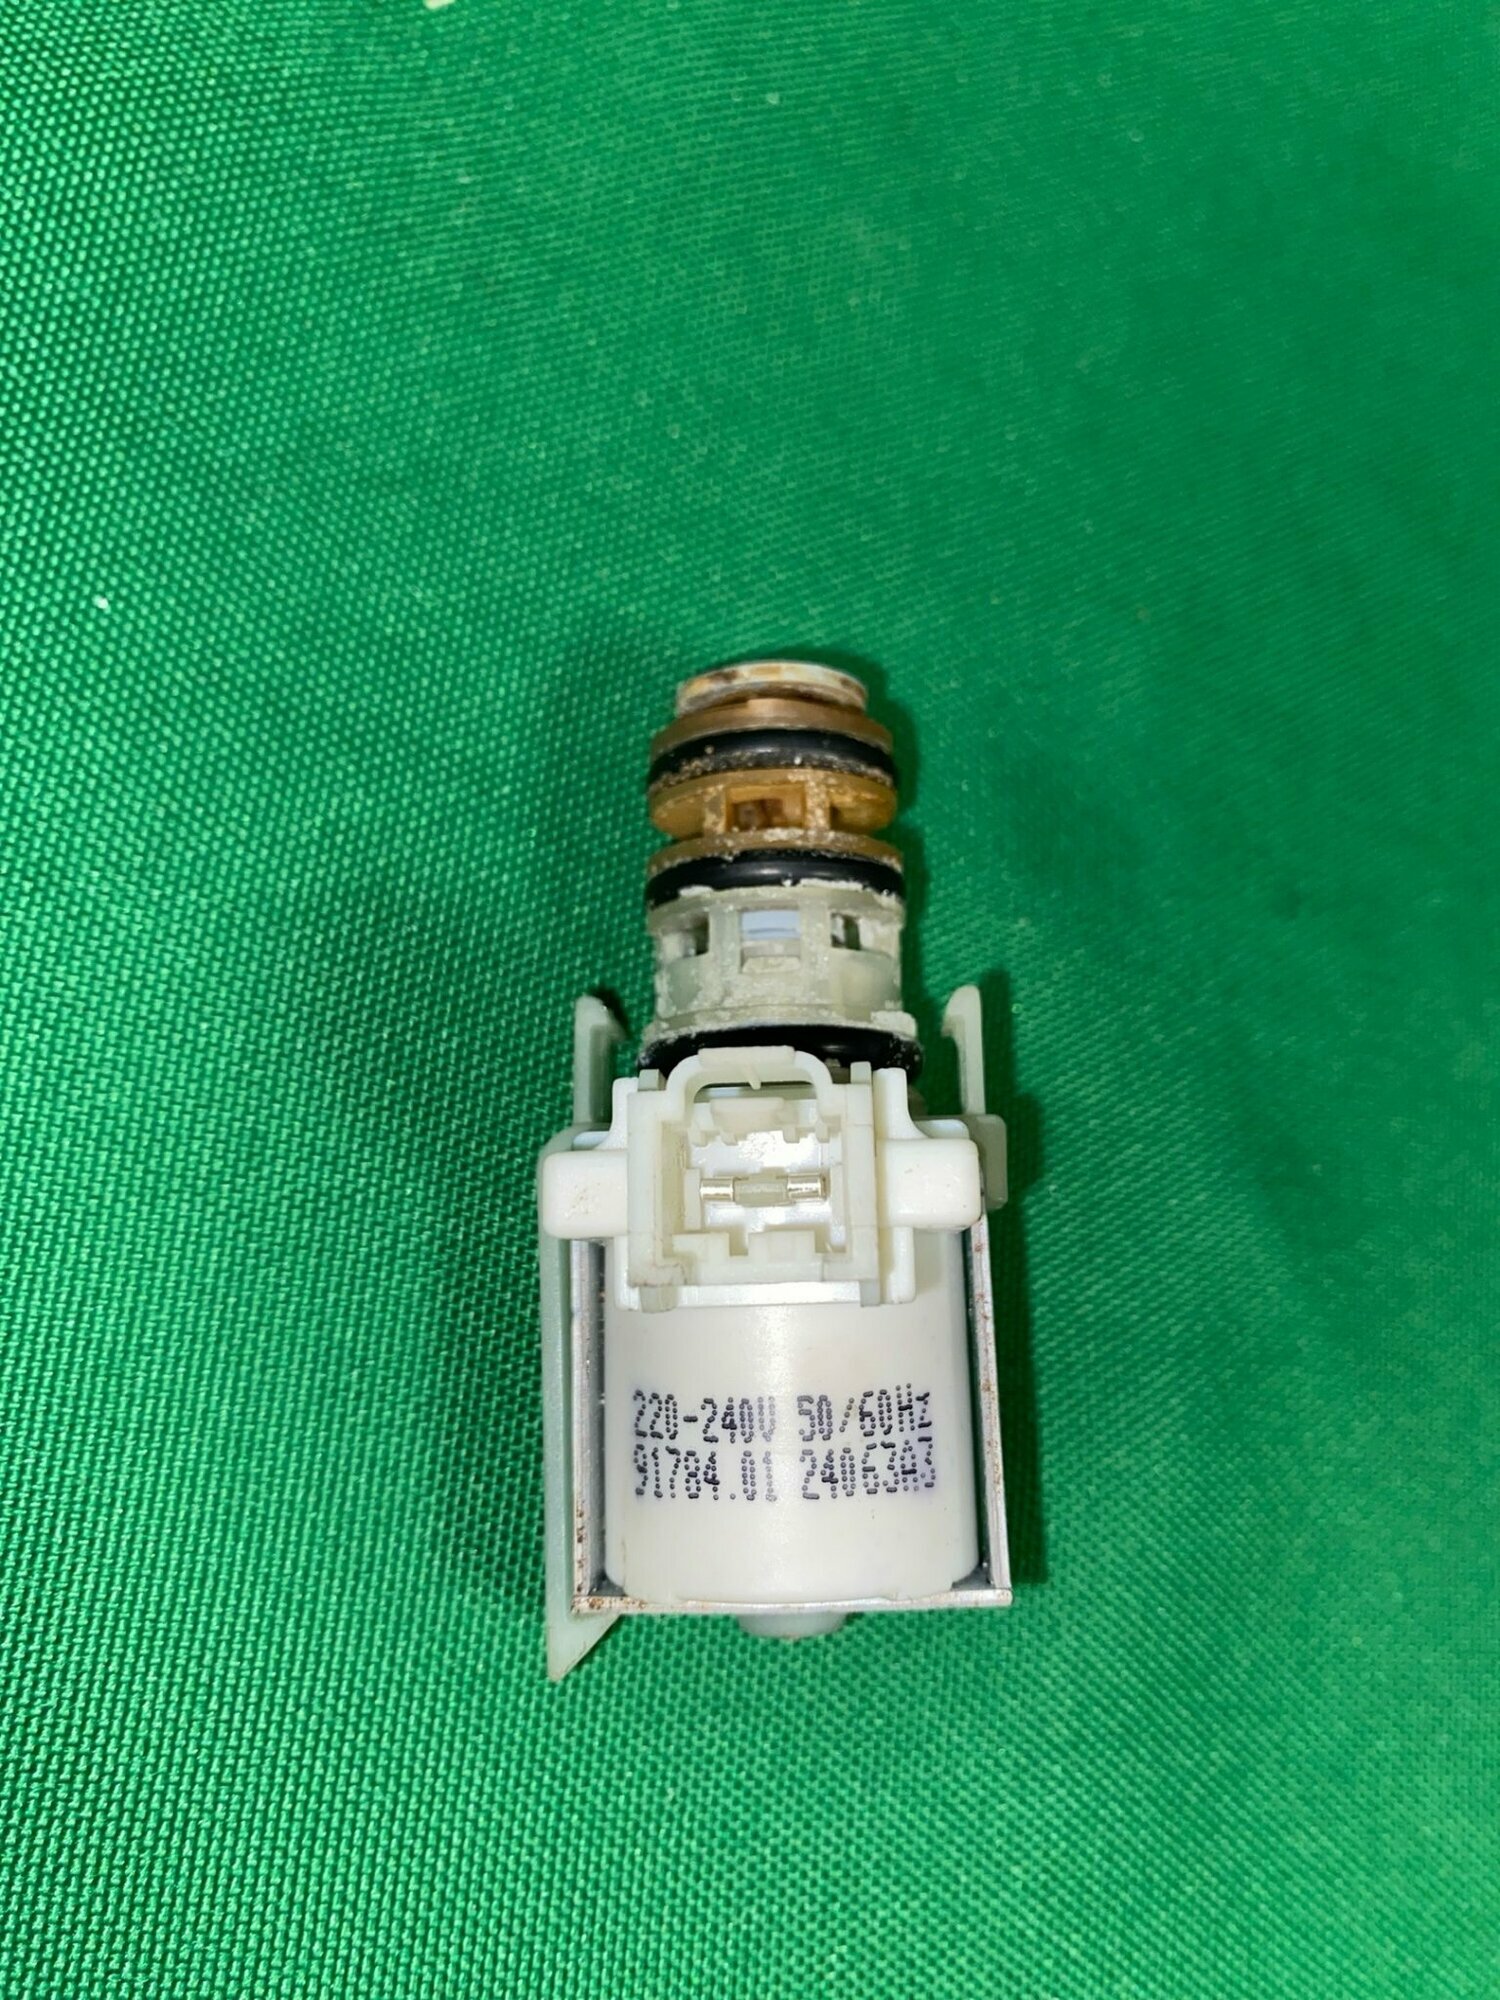 Клапан одинарный Siemens 91784.01 для пмм